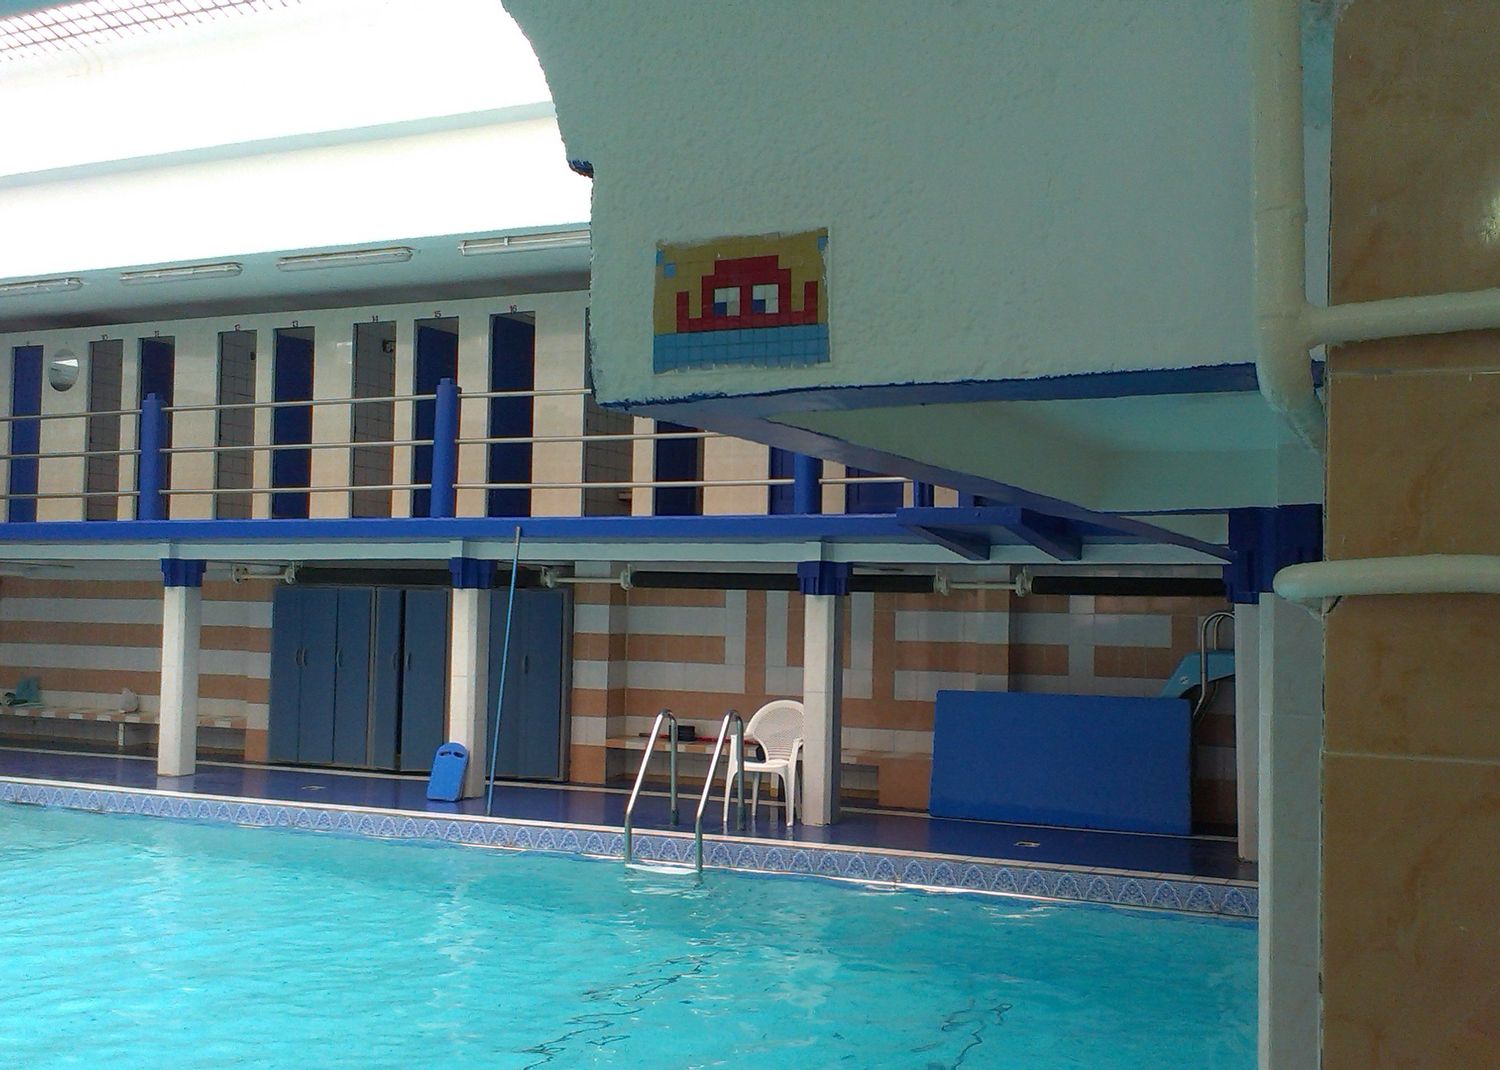 La piscine Espace Form Oberkampf, située dans le 11e arrondissement de Paris.